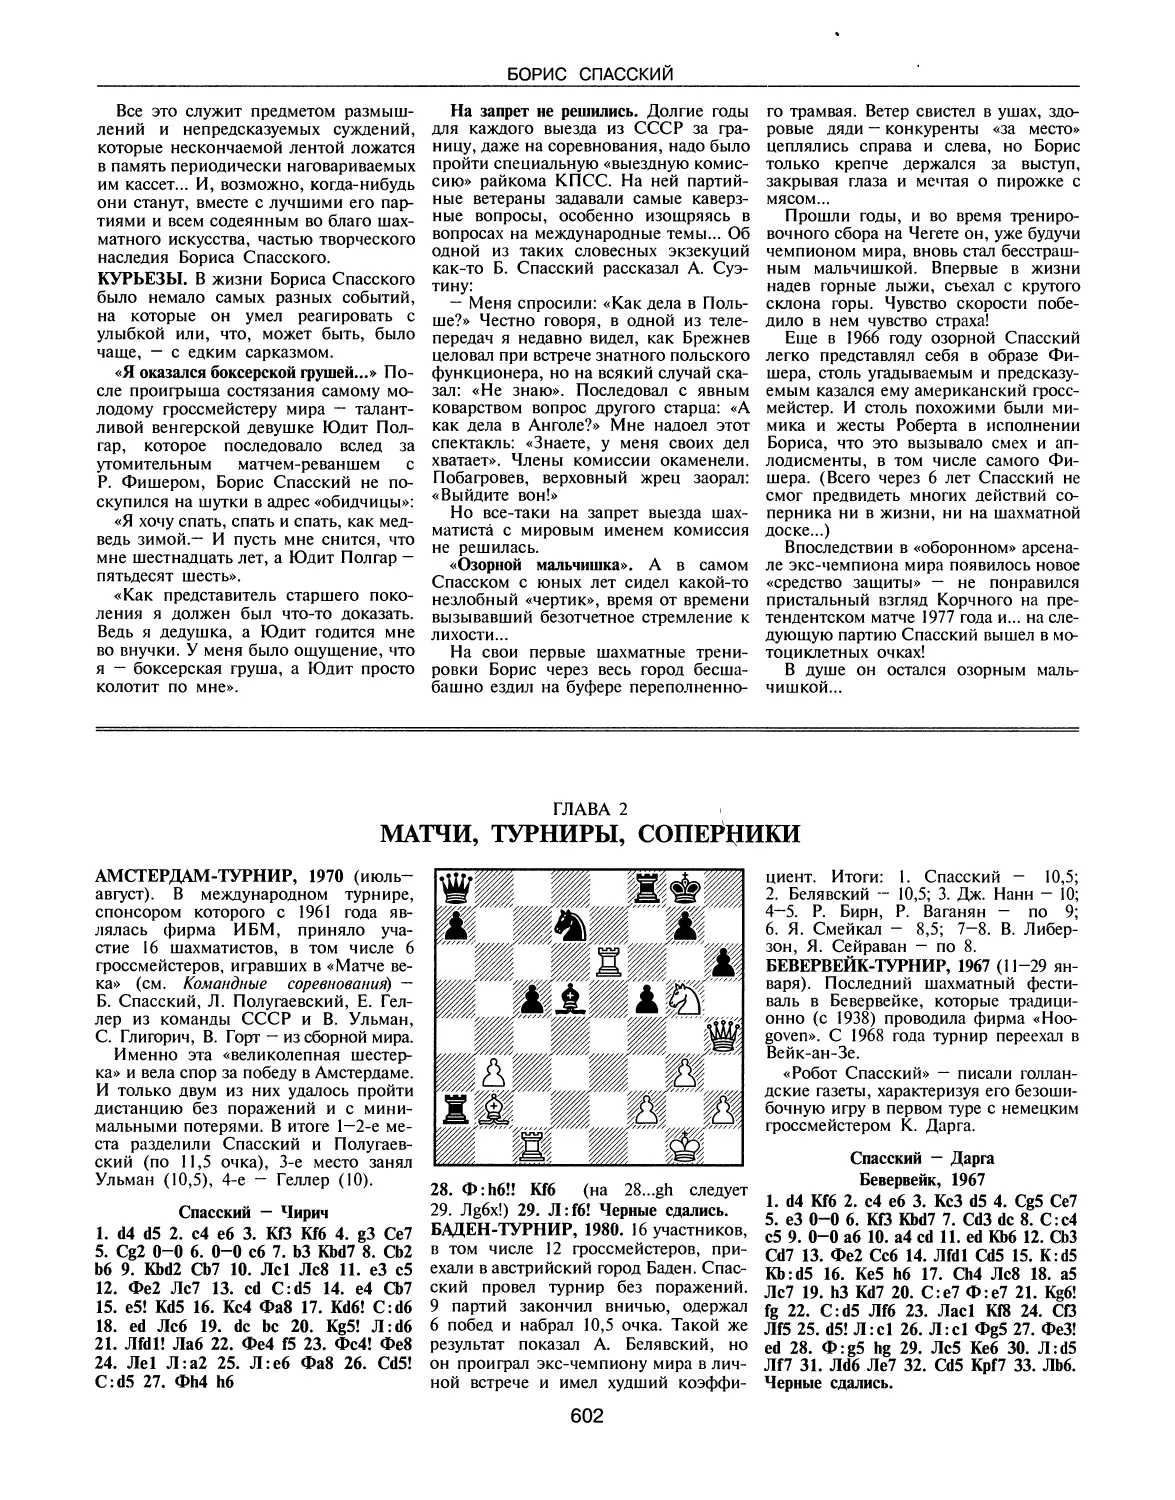 Курьезы
ГЛАВА 2. Матчи, турниры, соперники
Баден-турнир, 1980
Бевервейк-турнир, 1967